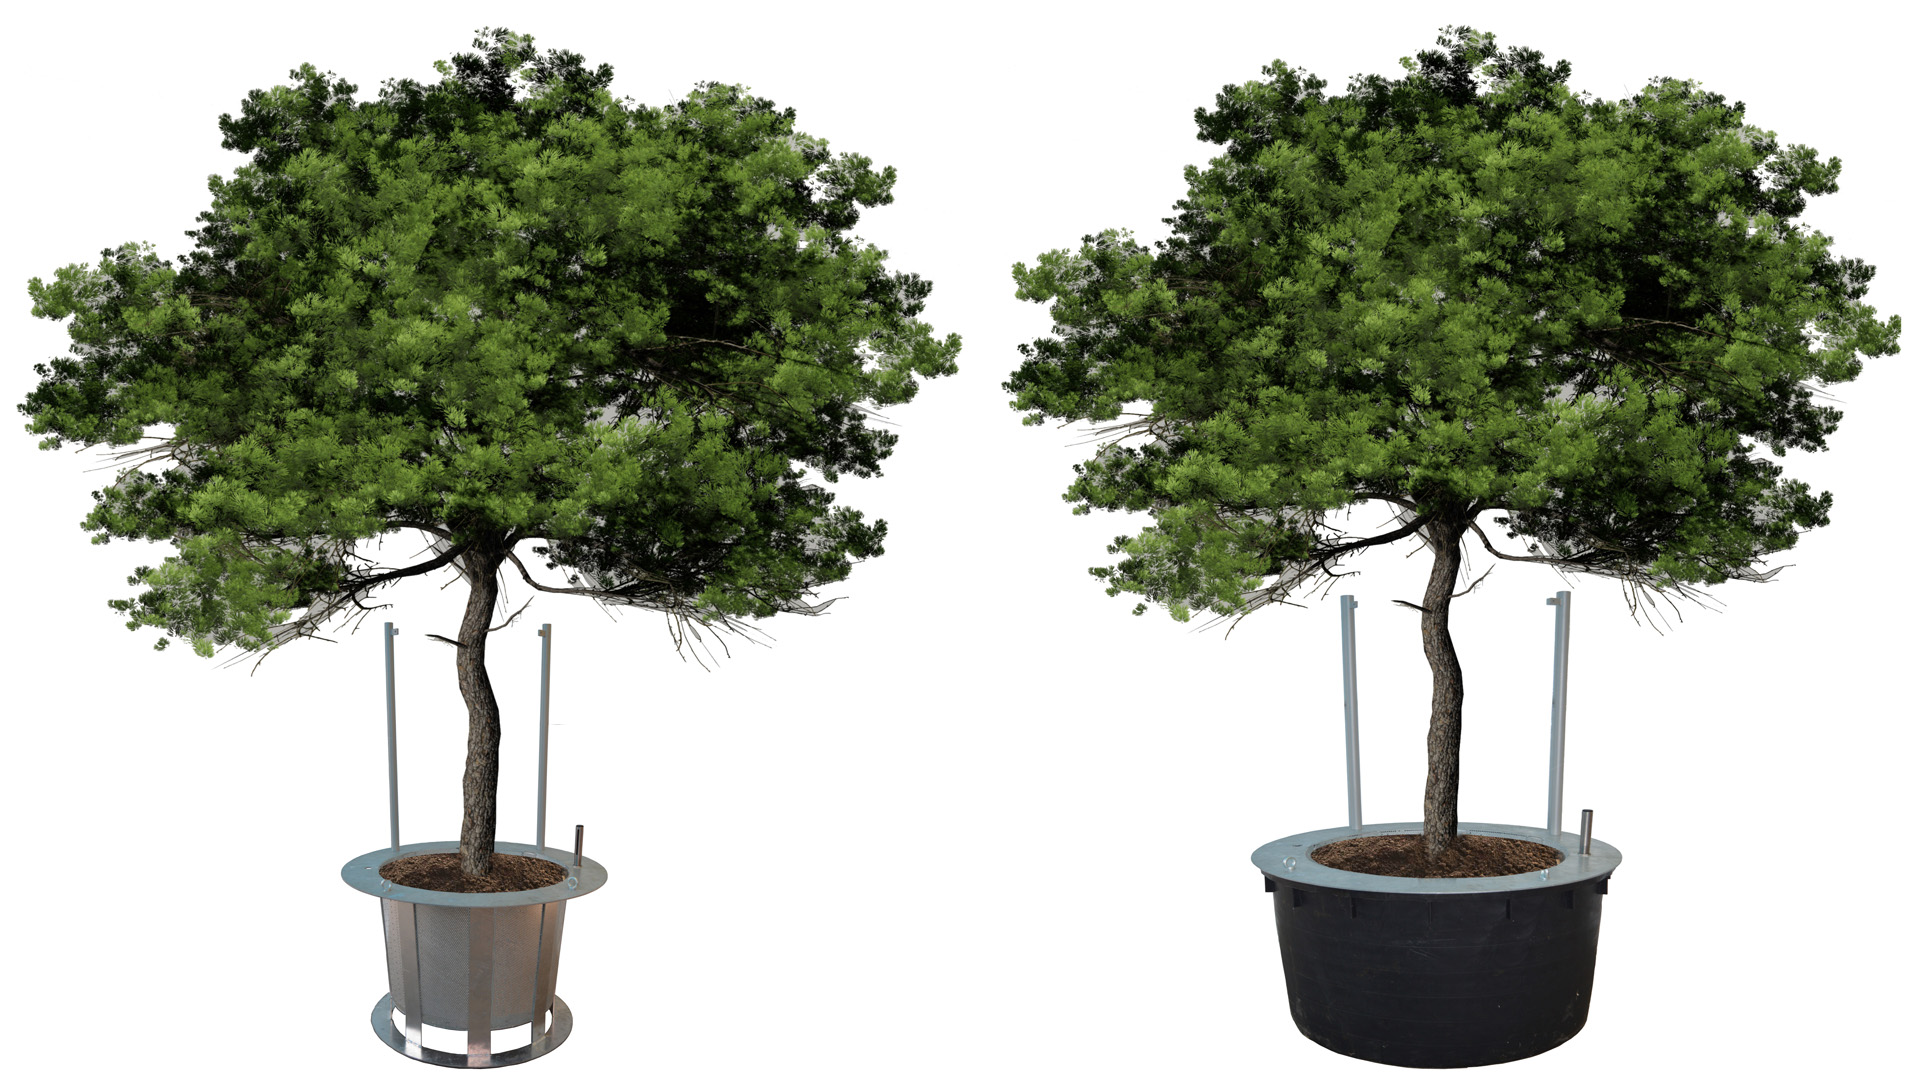 Hydro Profi Line® Grosspflanzenkulturtöpfe für Bäume und Hydro Profi Line® Pflanzkörbe für intensive Begrünungen und Wechselbepflanzungen